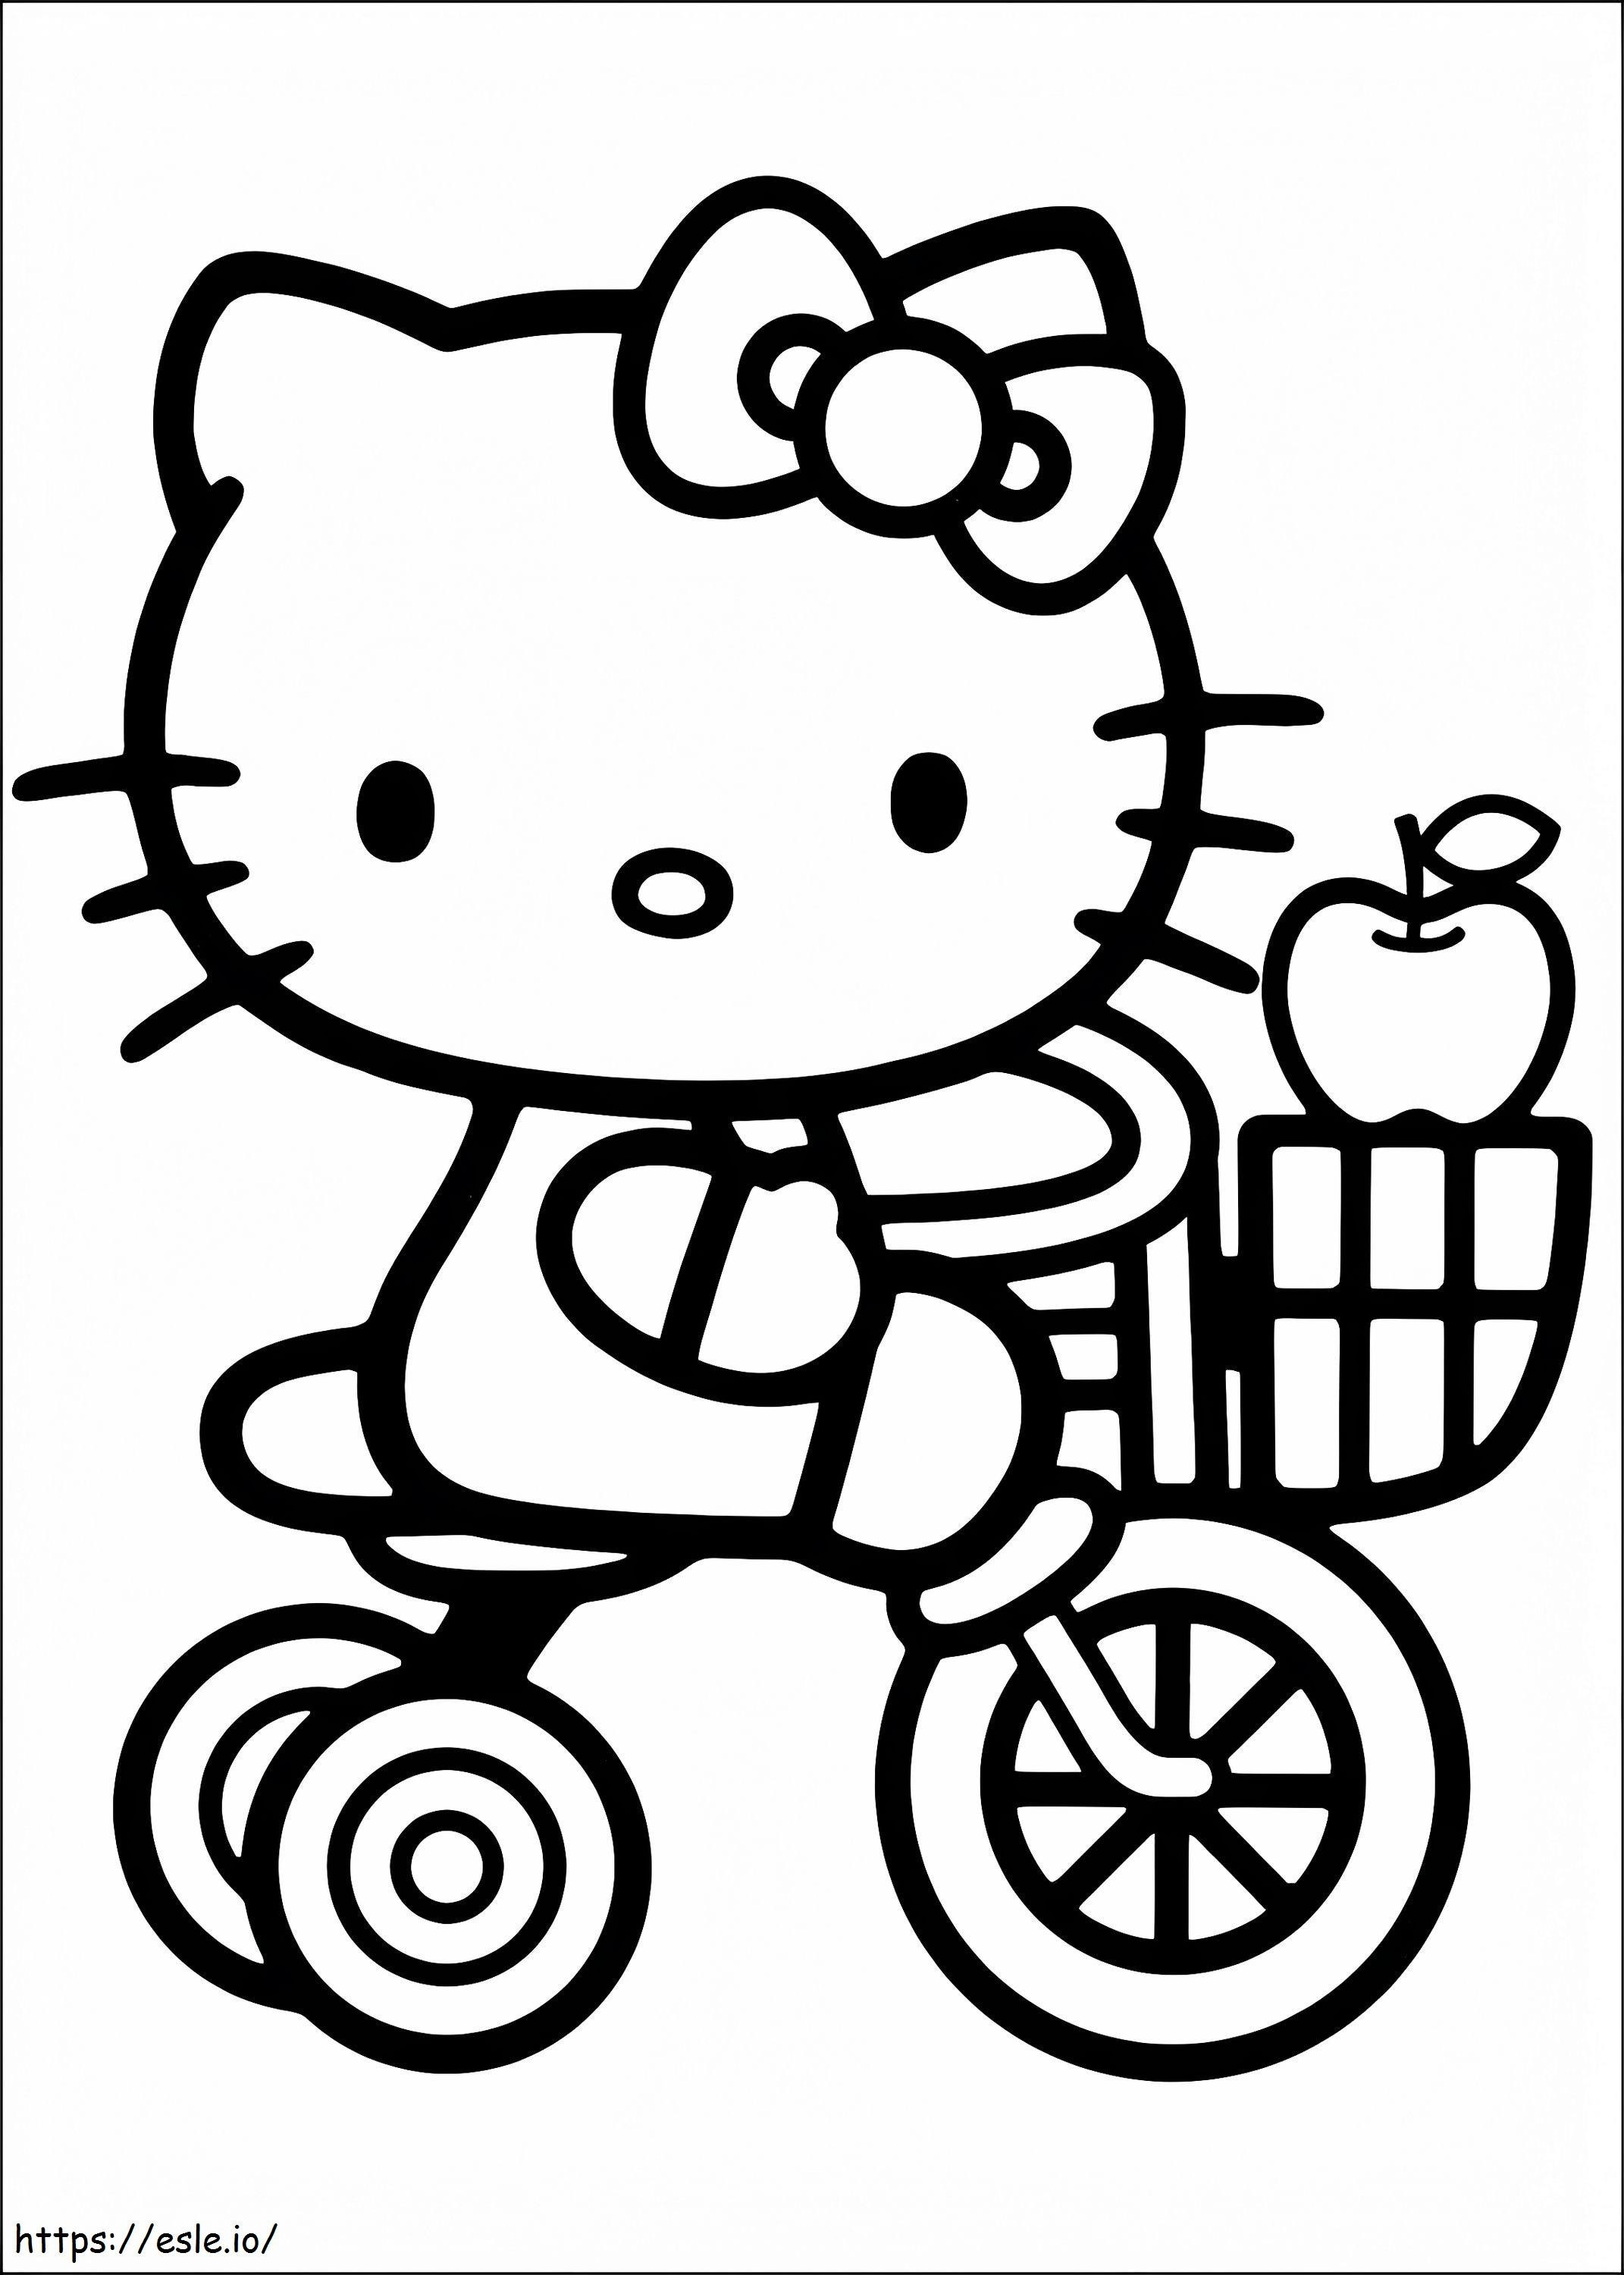 1534321139 Hello Kitty Bisiklet A4 boyama